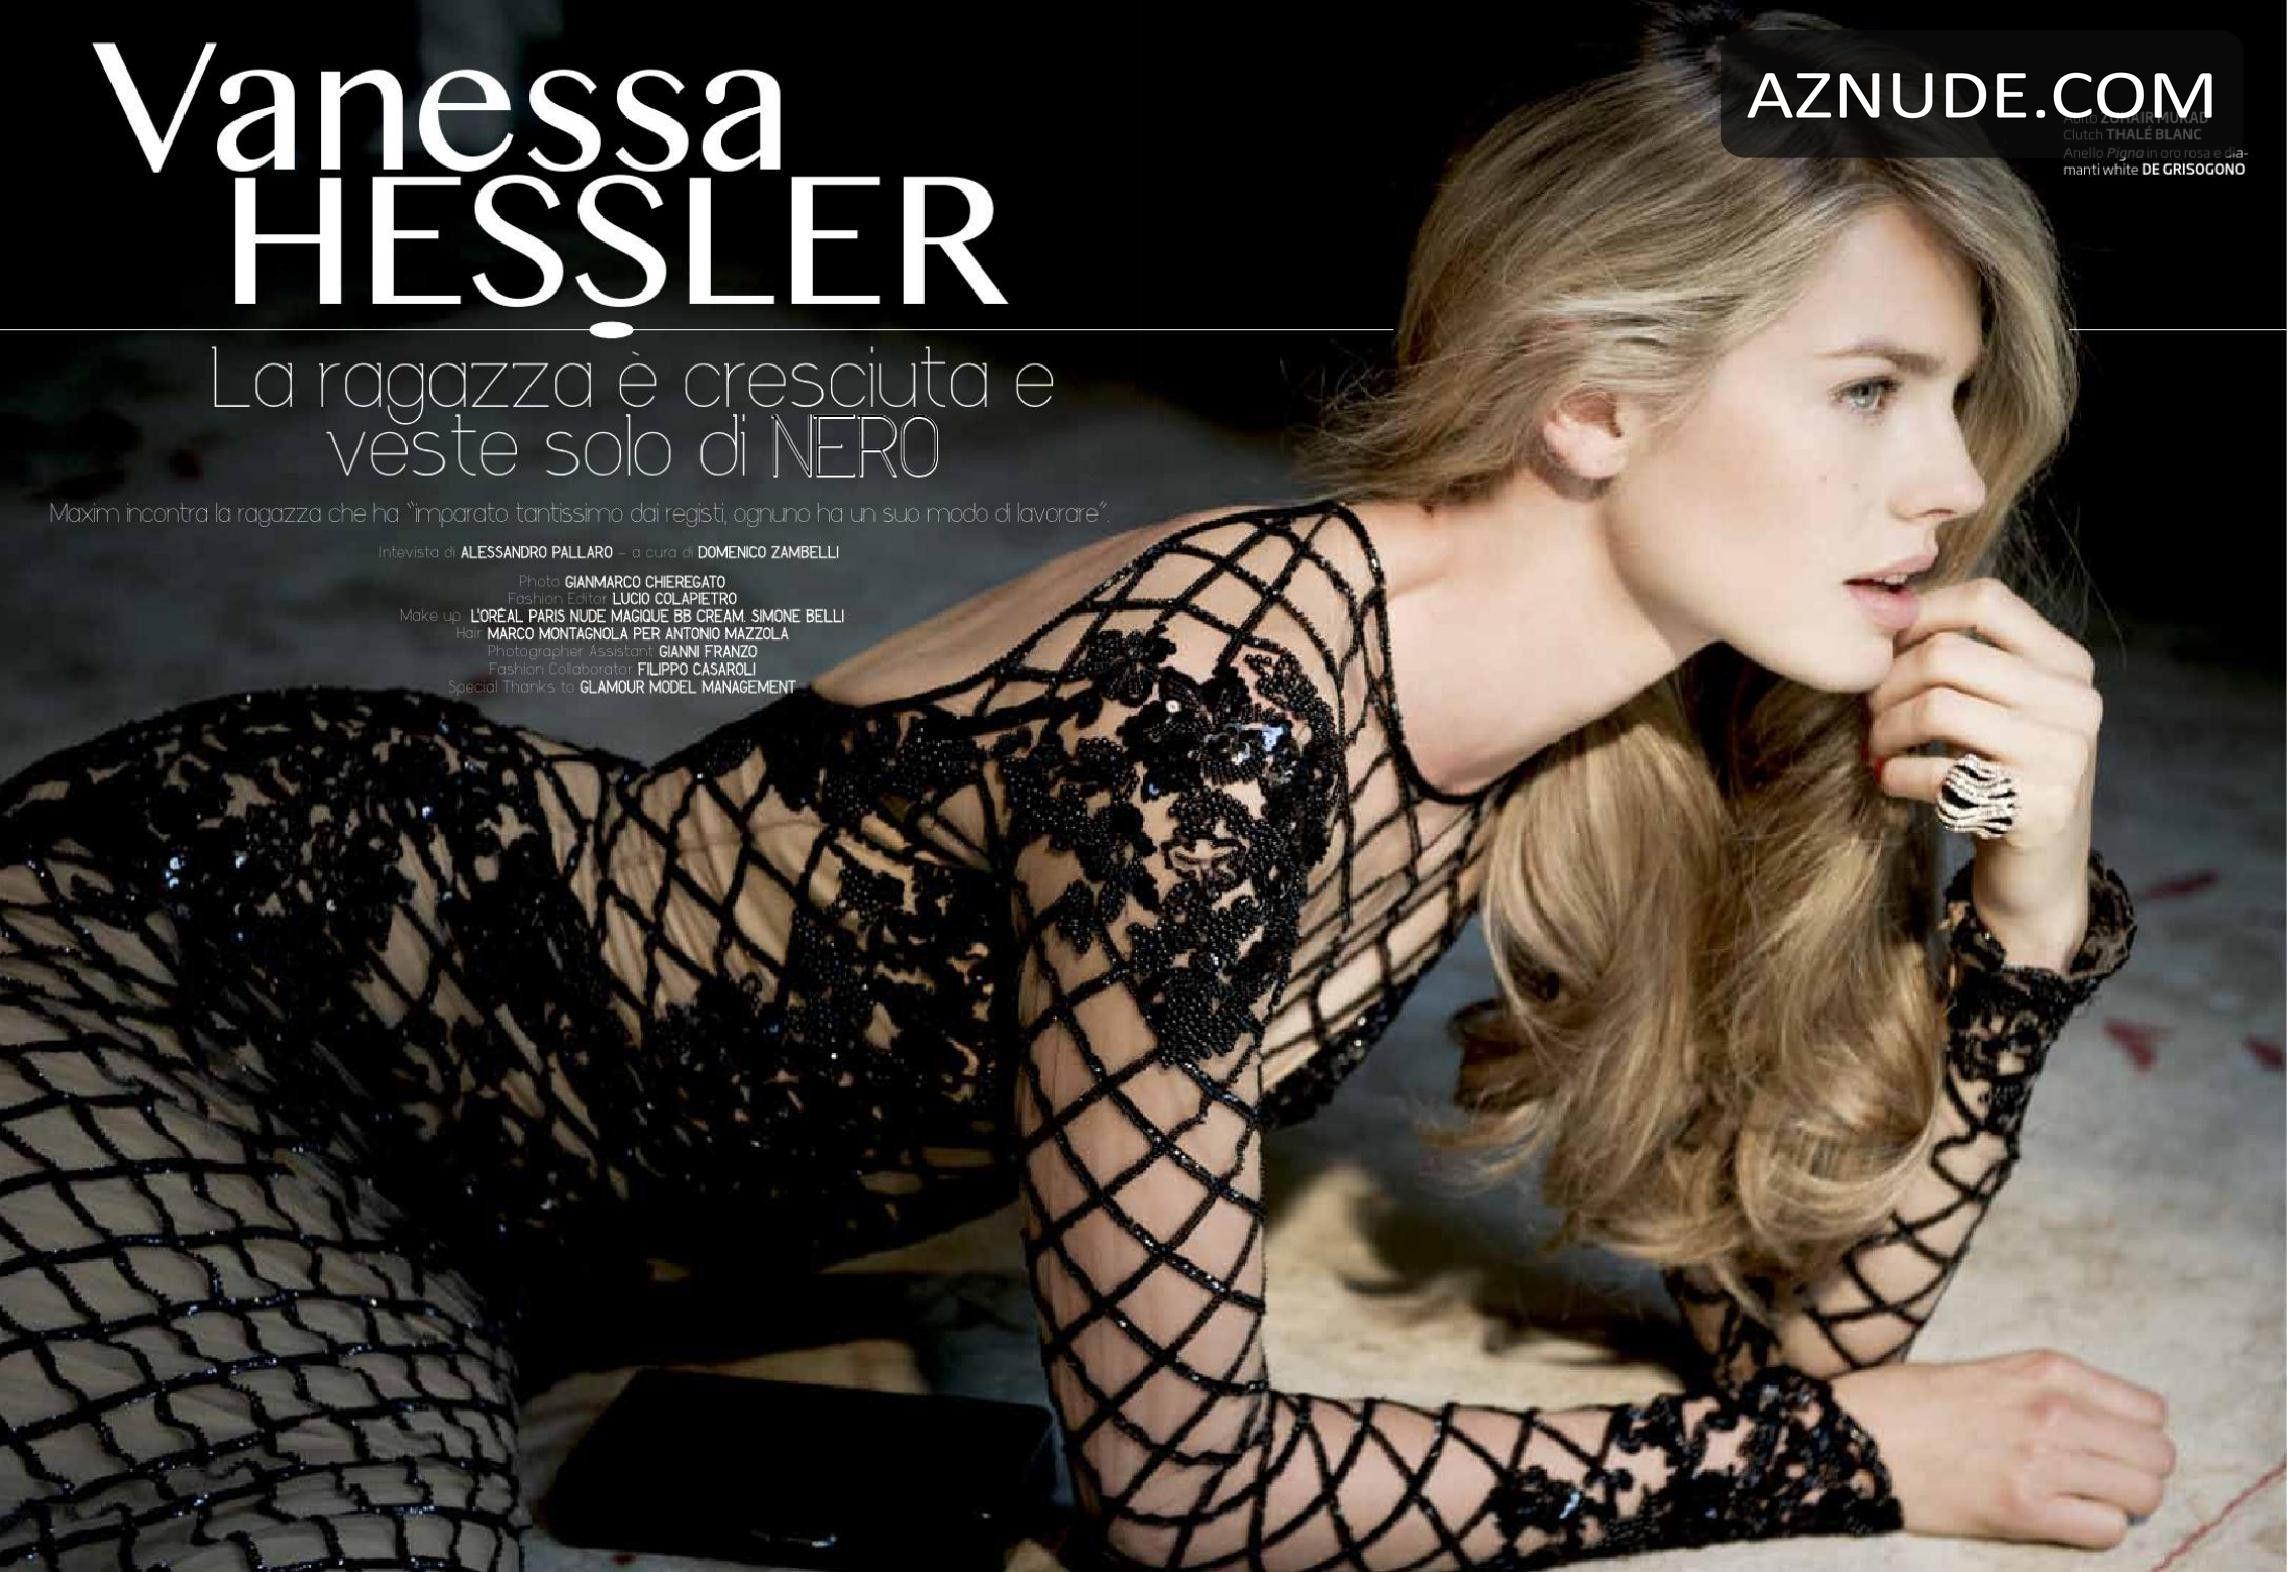 Vanessa hessler topless